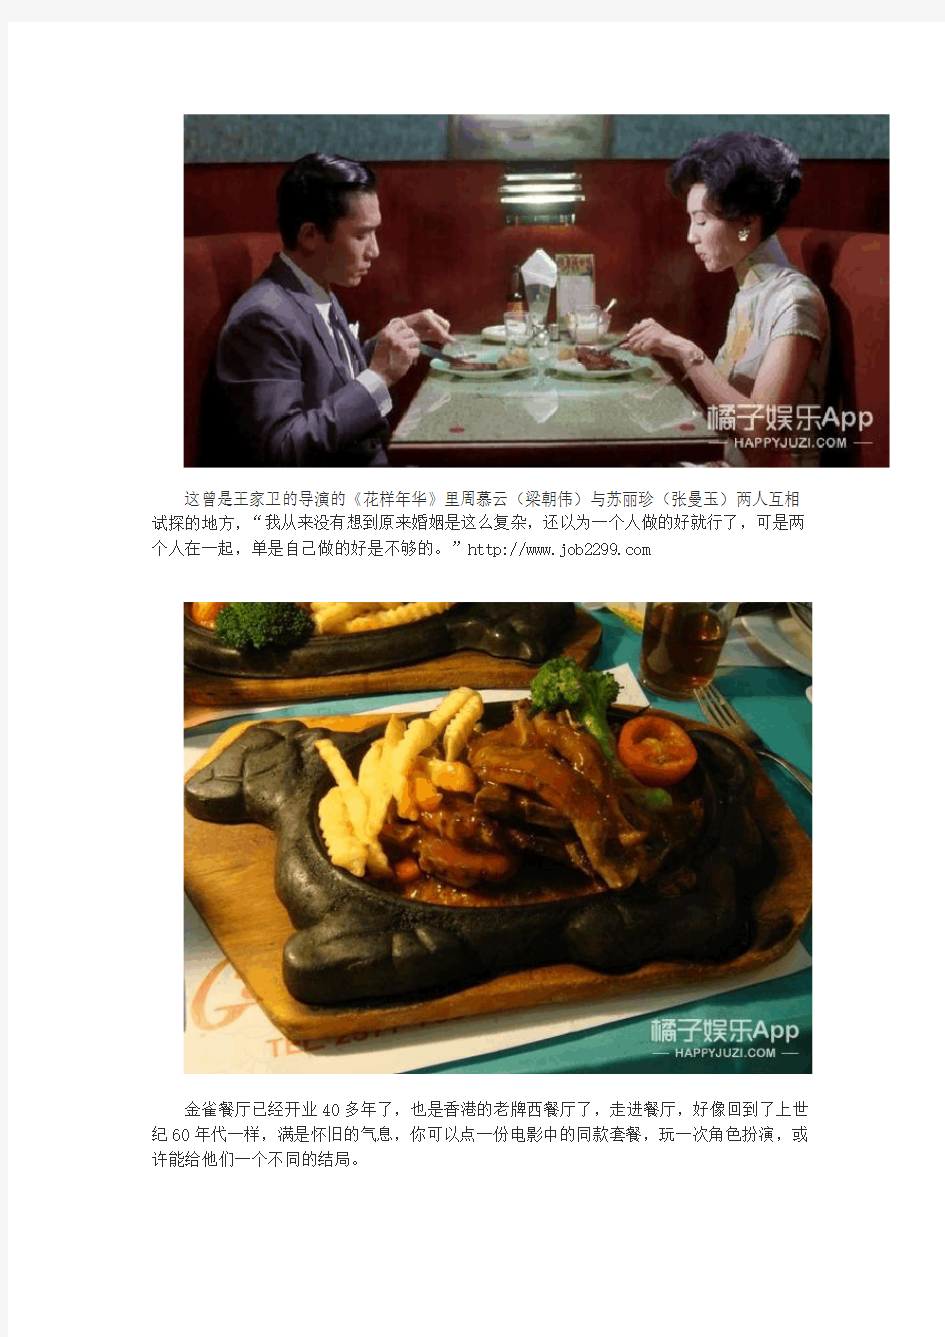 记忆中经典香港电影中的美食